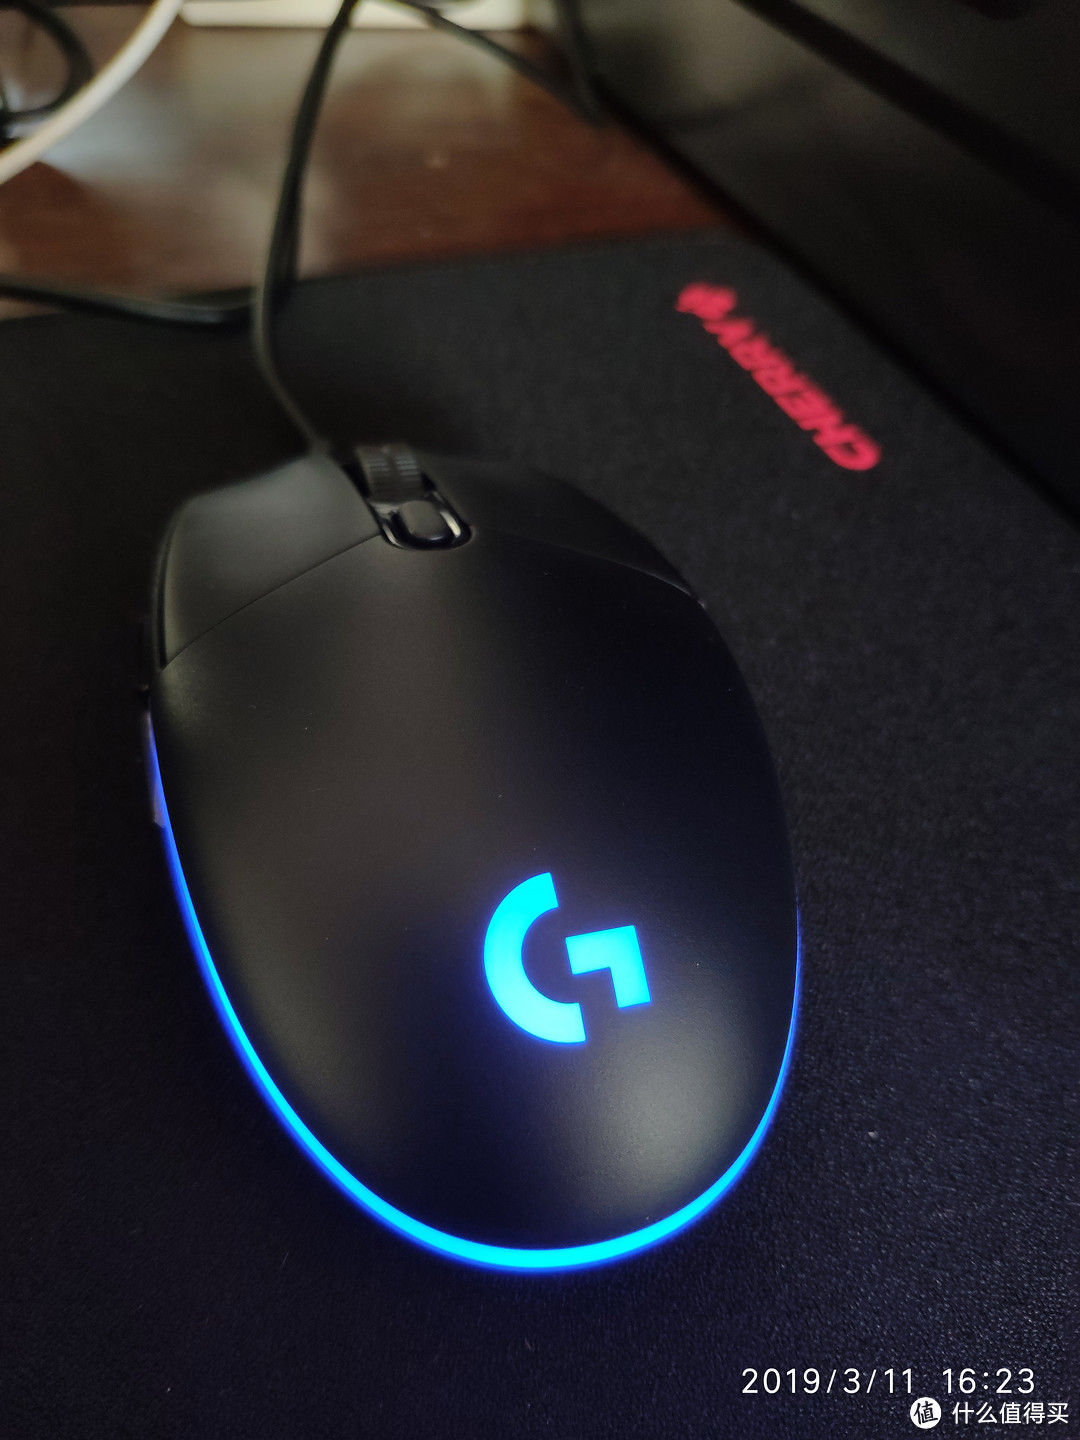 鼠标有RGB光效，弥补一下键盘没有的遗憾吧哈哈，附带说下这款基础版的罗技G102作为办公来说真的挺舒服的，价格也低值得入手。